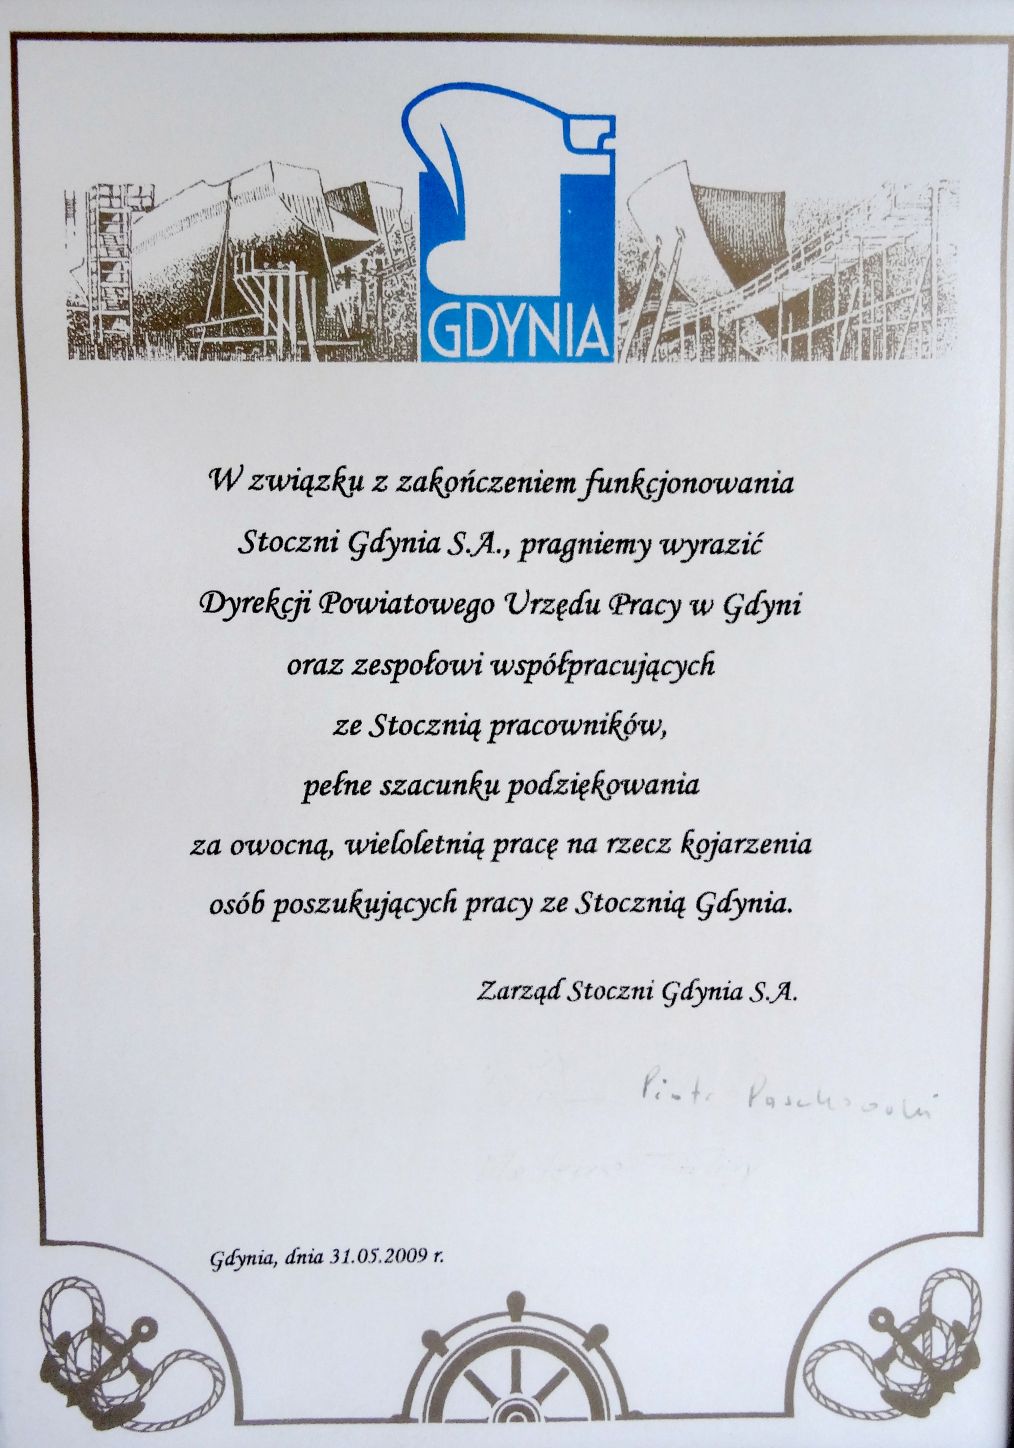 Podziękowania Zarządu Stoczni Gdynia